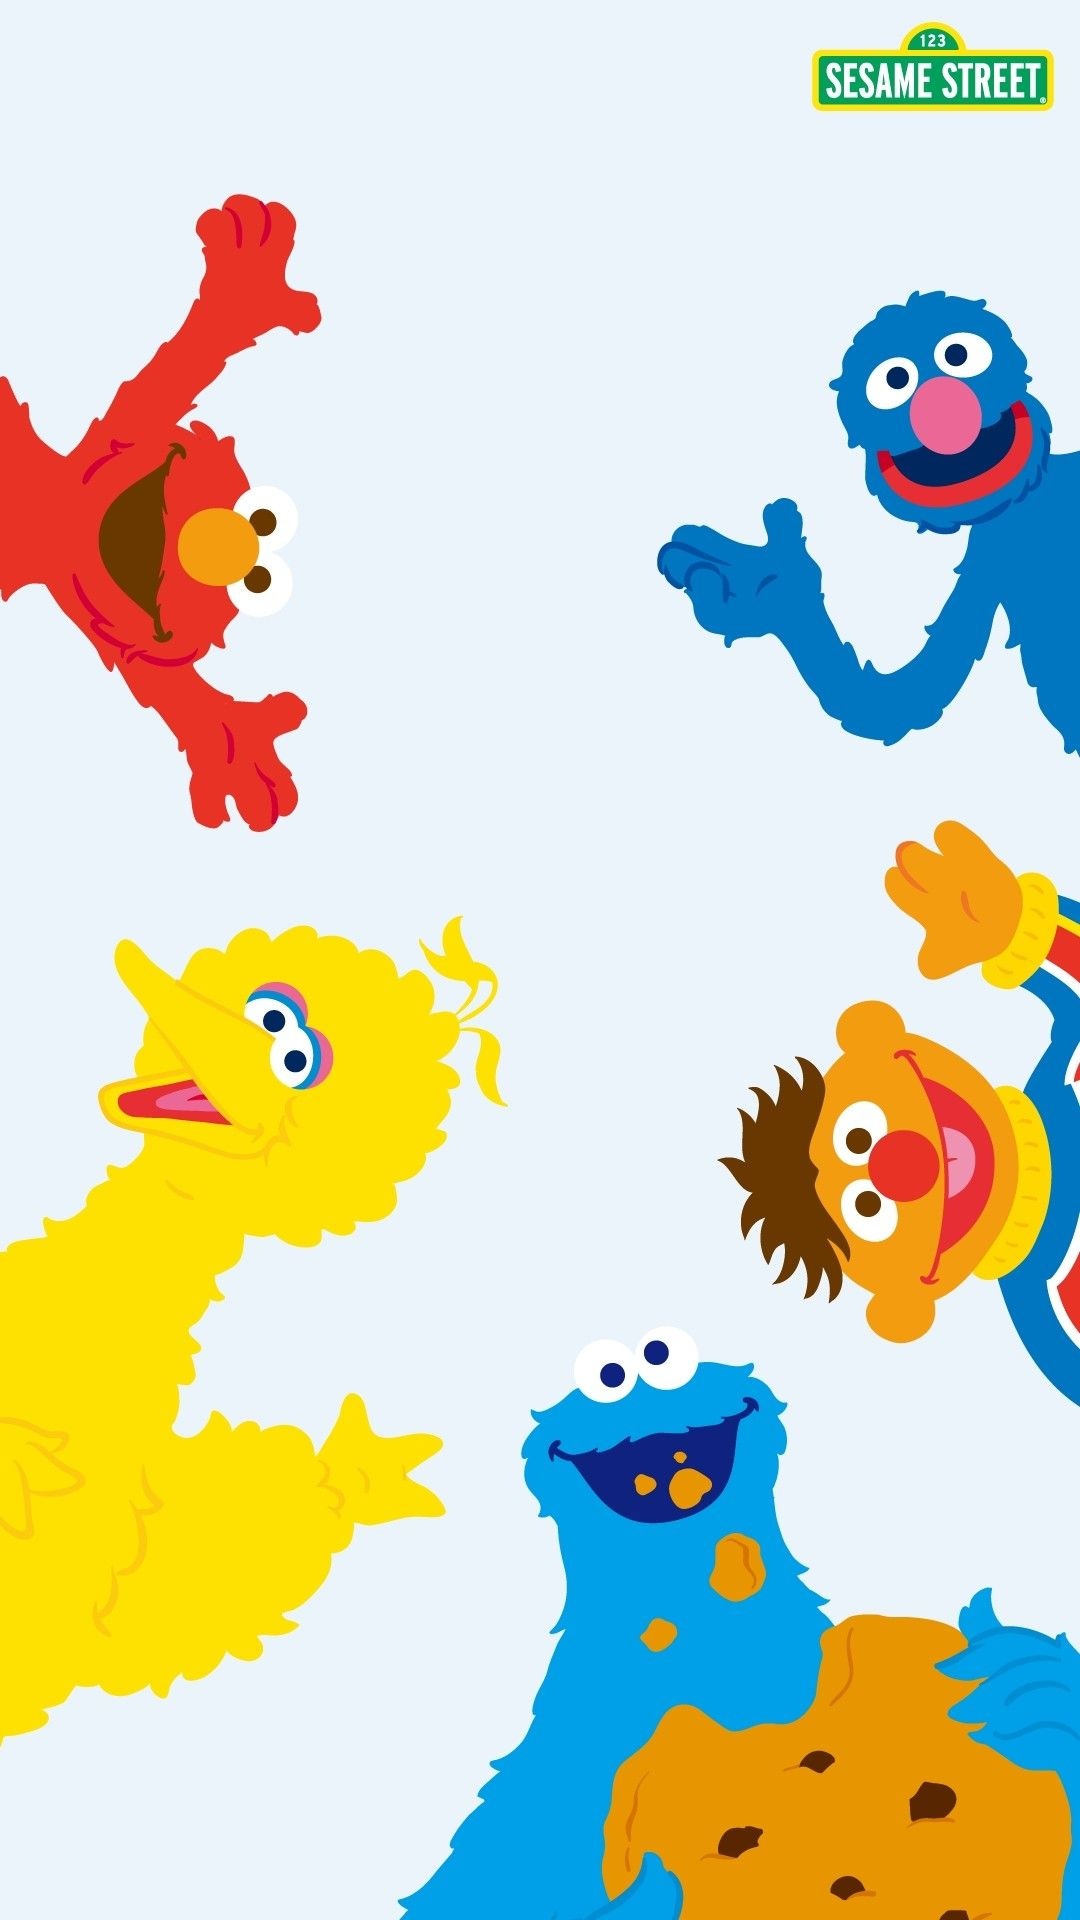 Sesame Street: The Muppets fan art, Elmo, Big Bird, Cookie Monster, Ernie, Bert. 1080x1920 Full HD Wallpaper.